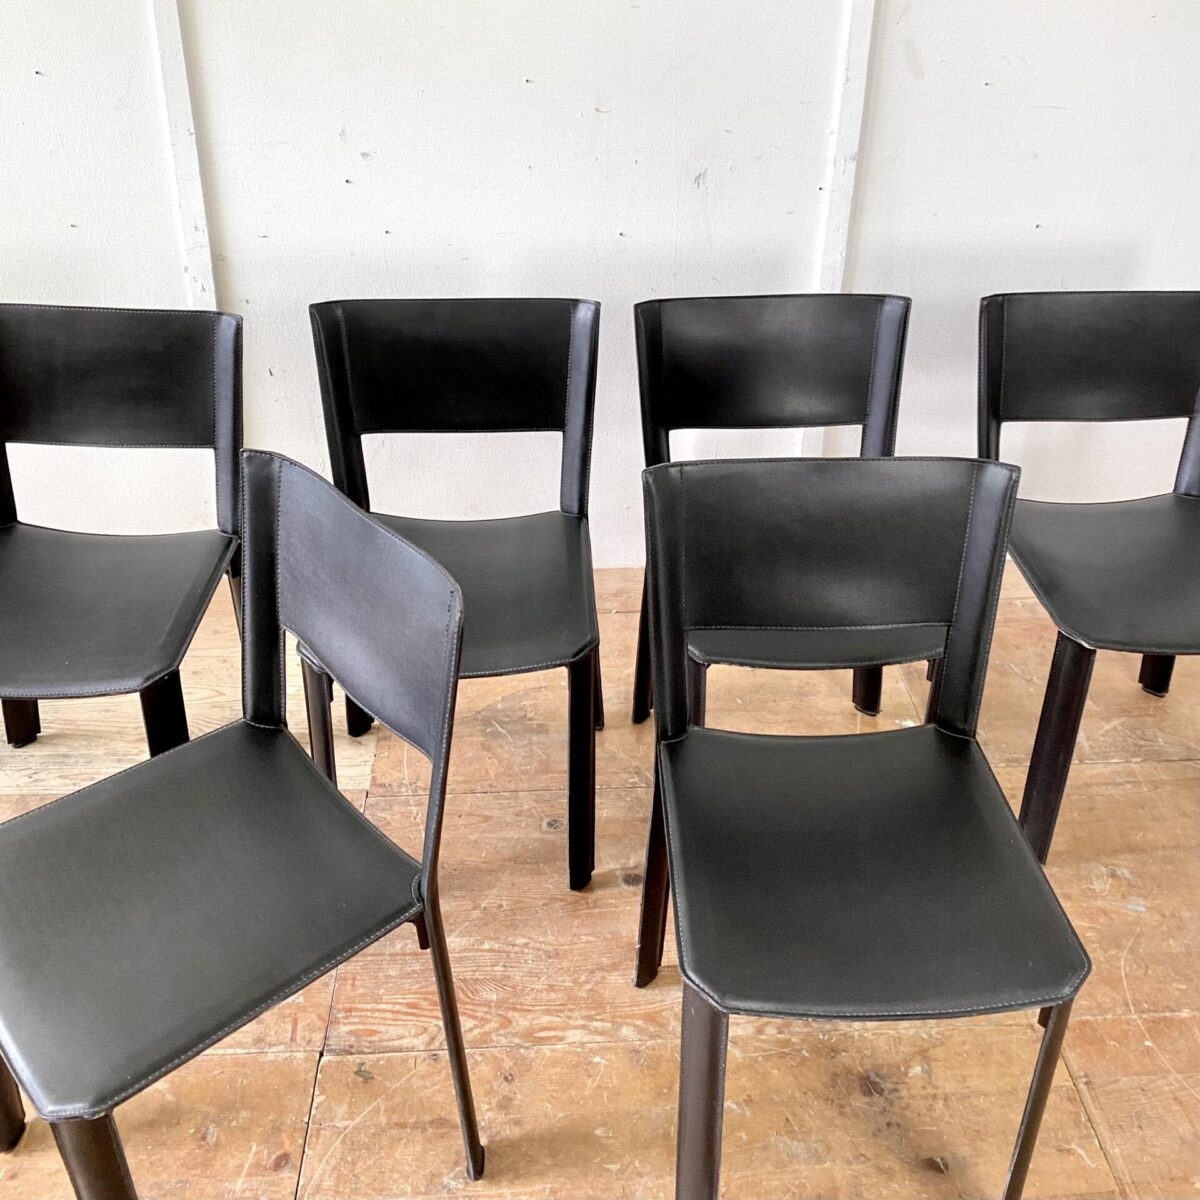 Deuxieme.shop Italienische Leder Stühle. 6er Set Esszimmer Stühle aus Leder. Ein Hersteller ist nicht ersichtlich, qualitative Verarbeitung. Matteo Grassi Verschnitt. An einem Stuhl fehlen zwei Kunststofffüsse, kleine Abschürfungen an den Kanten, ansonsten in gepflegtem Zustand. Preis fürs Set. 